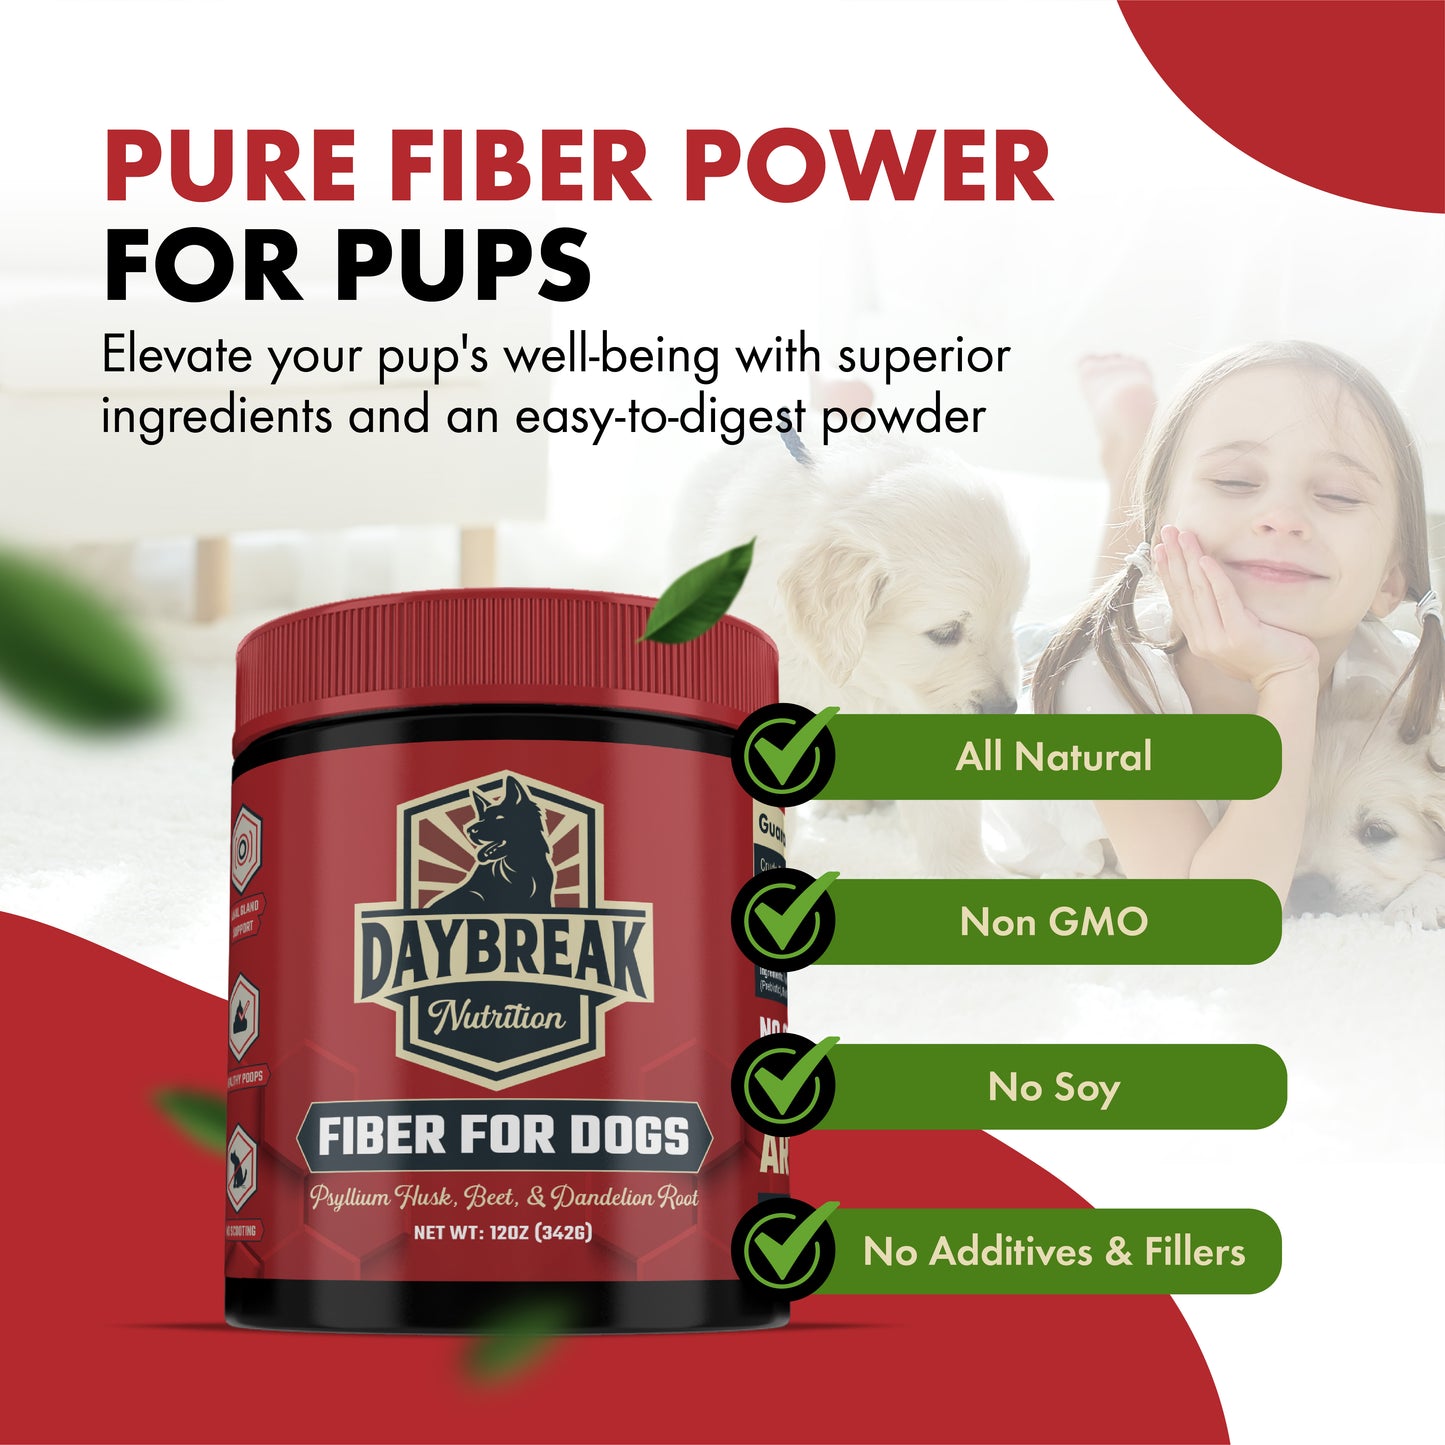 Fiber for Dogs